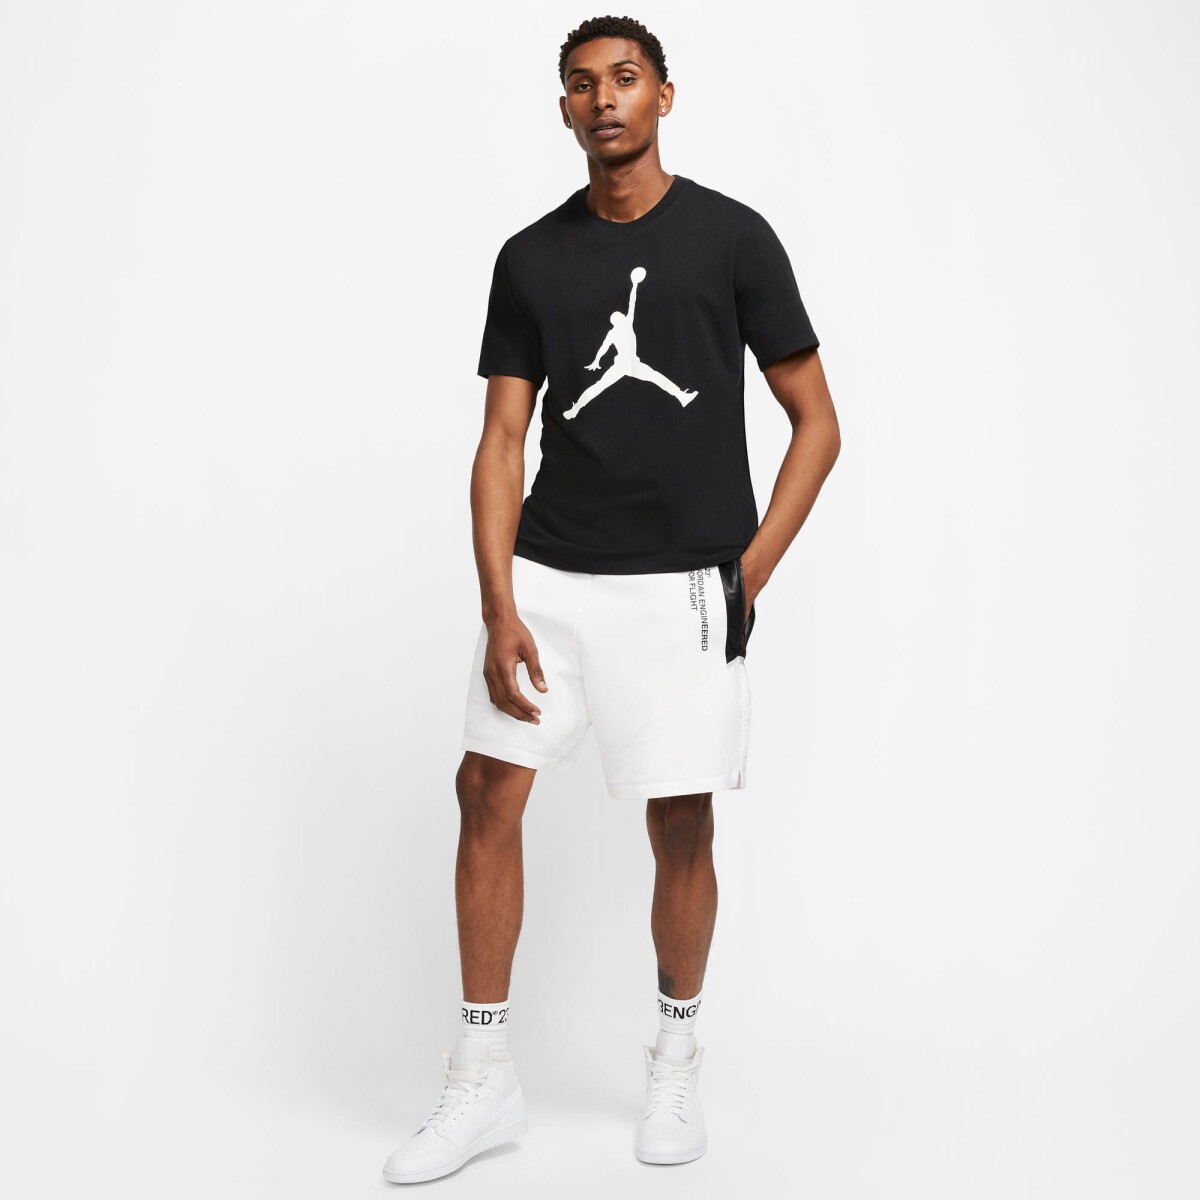 Remera Nike Moda Hombre Core Negra Clasica - S/C 